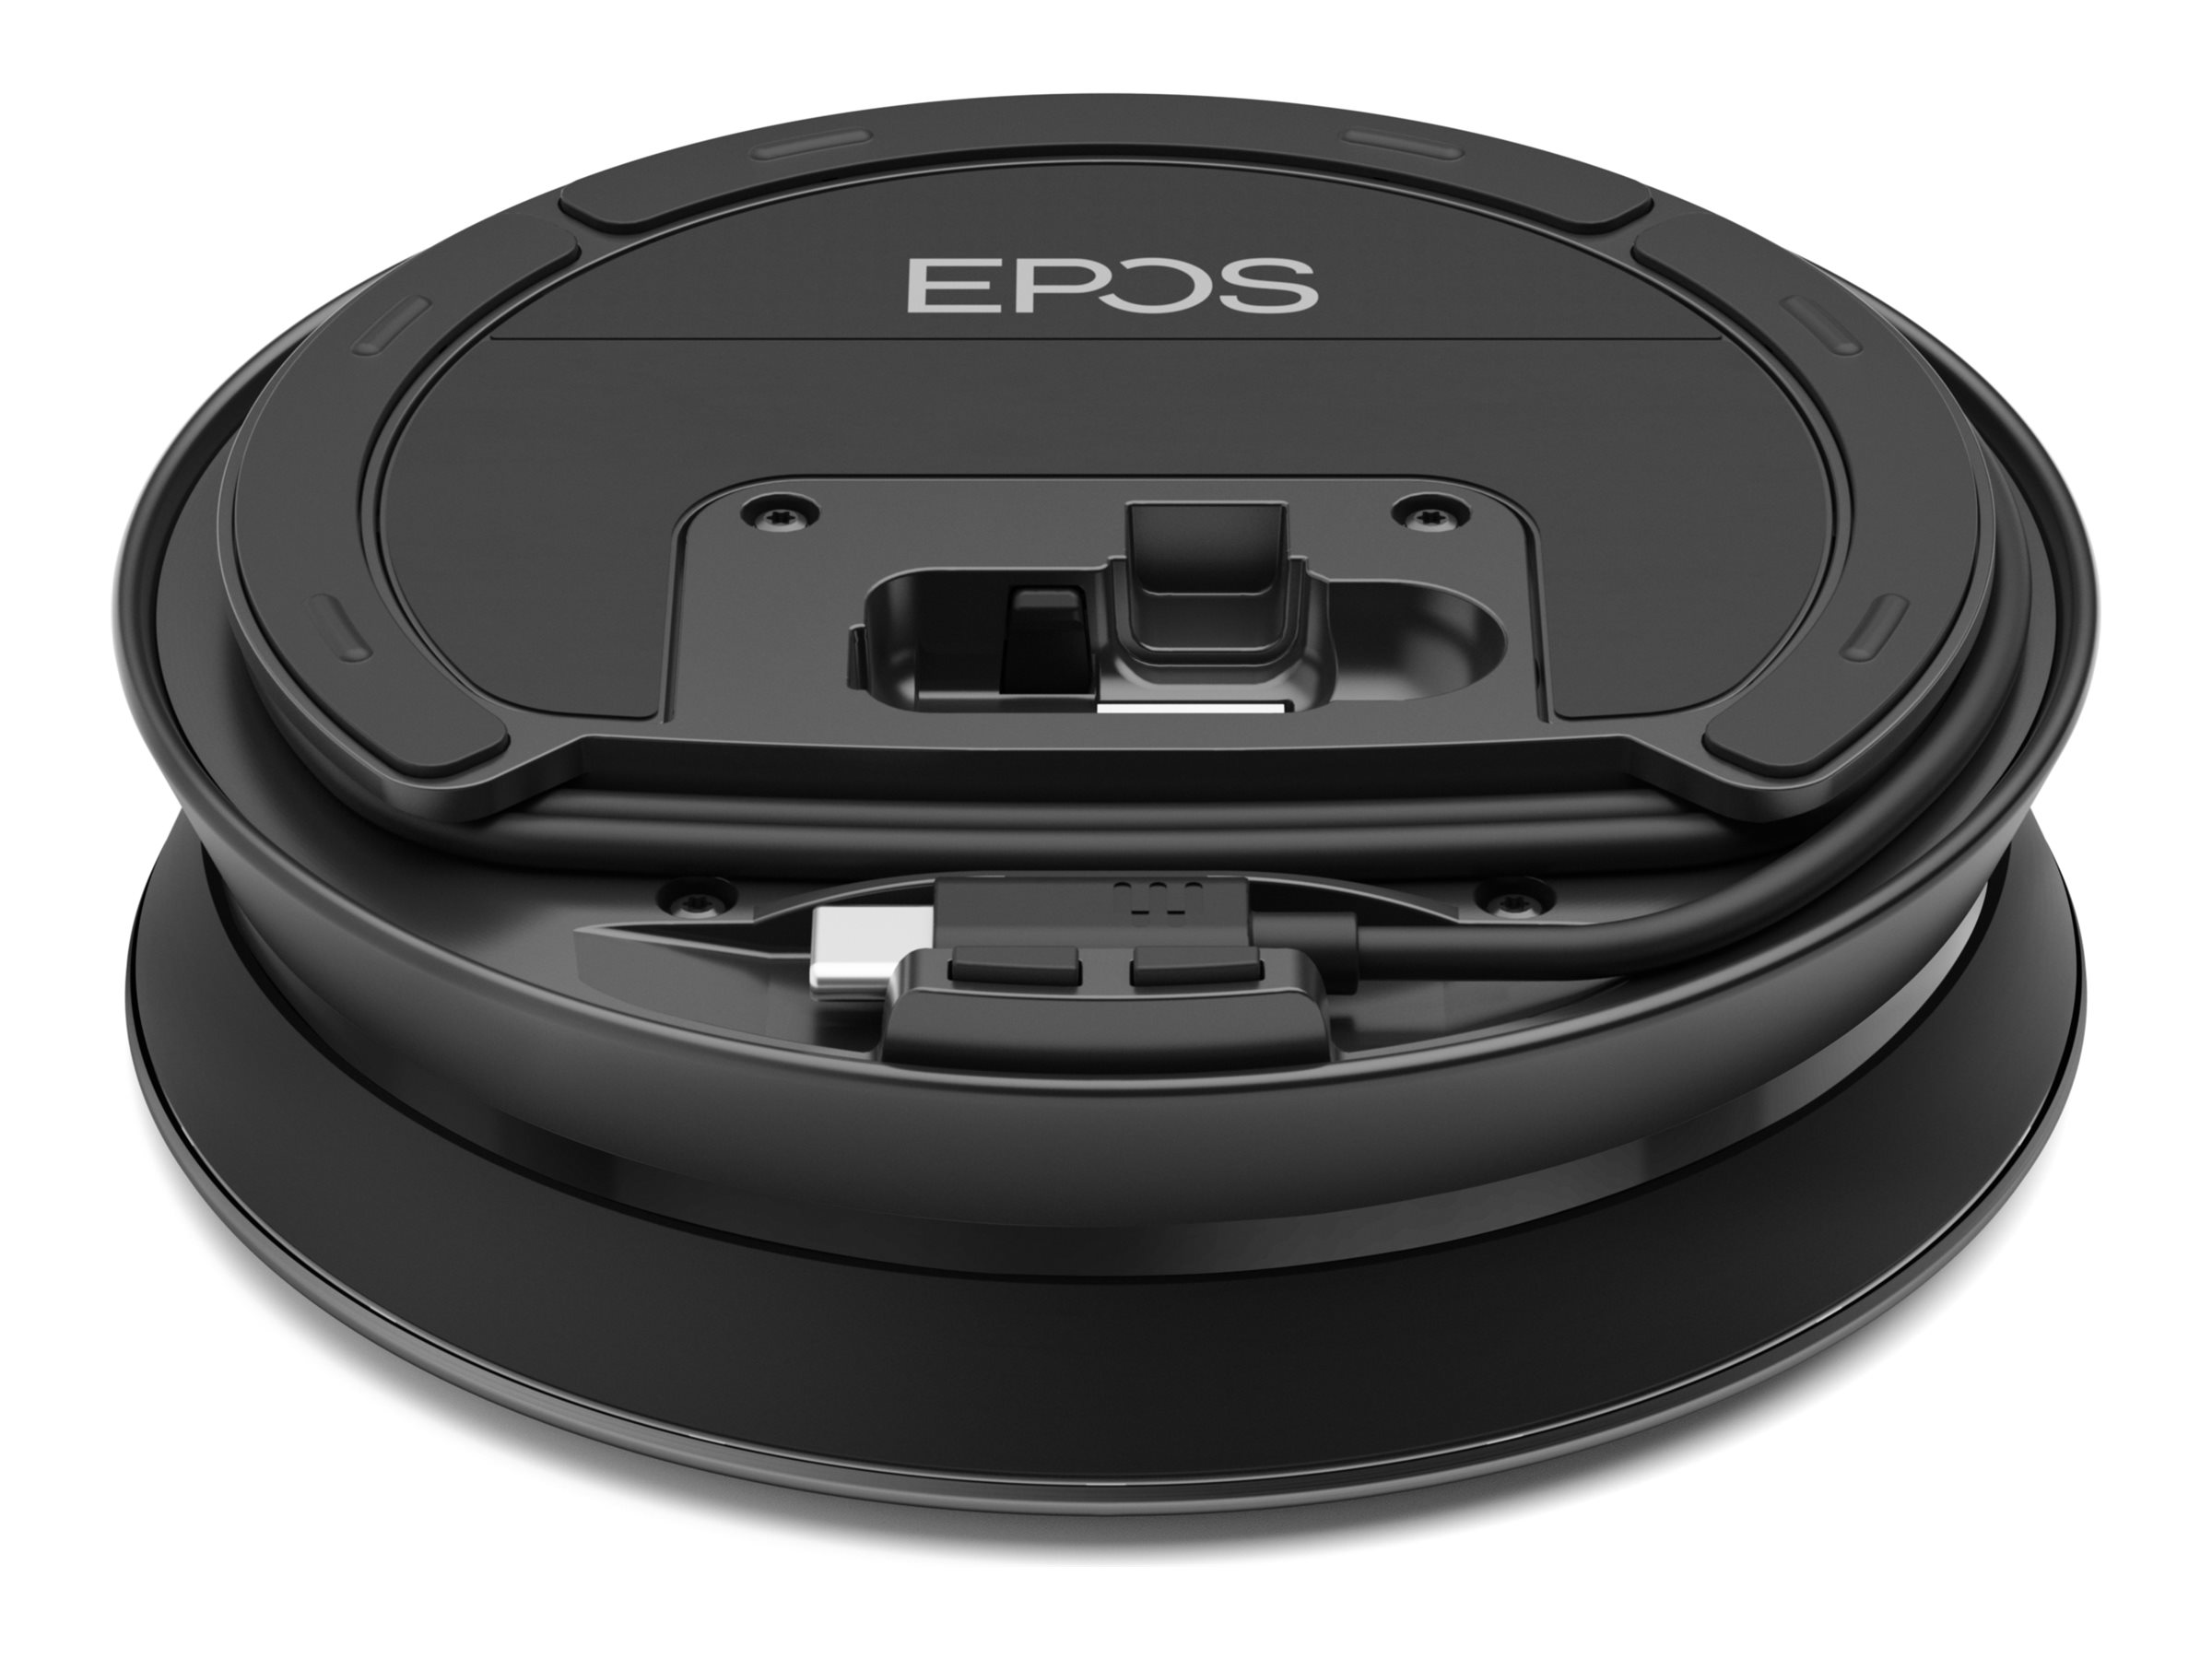 EPOS EXPAND 40 - Haut-parleur intelligent - Bluetooth - sans fil, filaire - USB-C - gris, noir - Optimisé pour la CU - 1000661 - Speakerphones